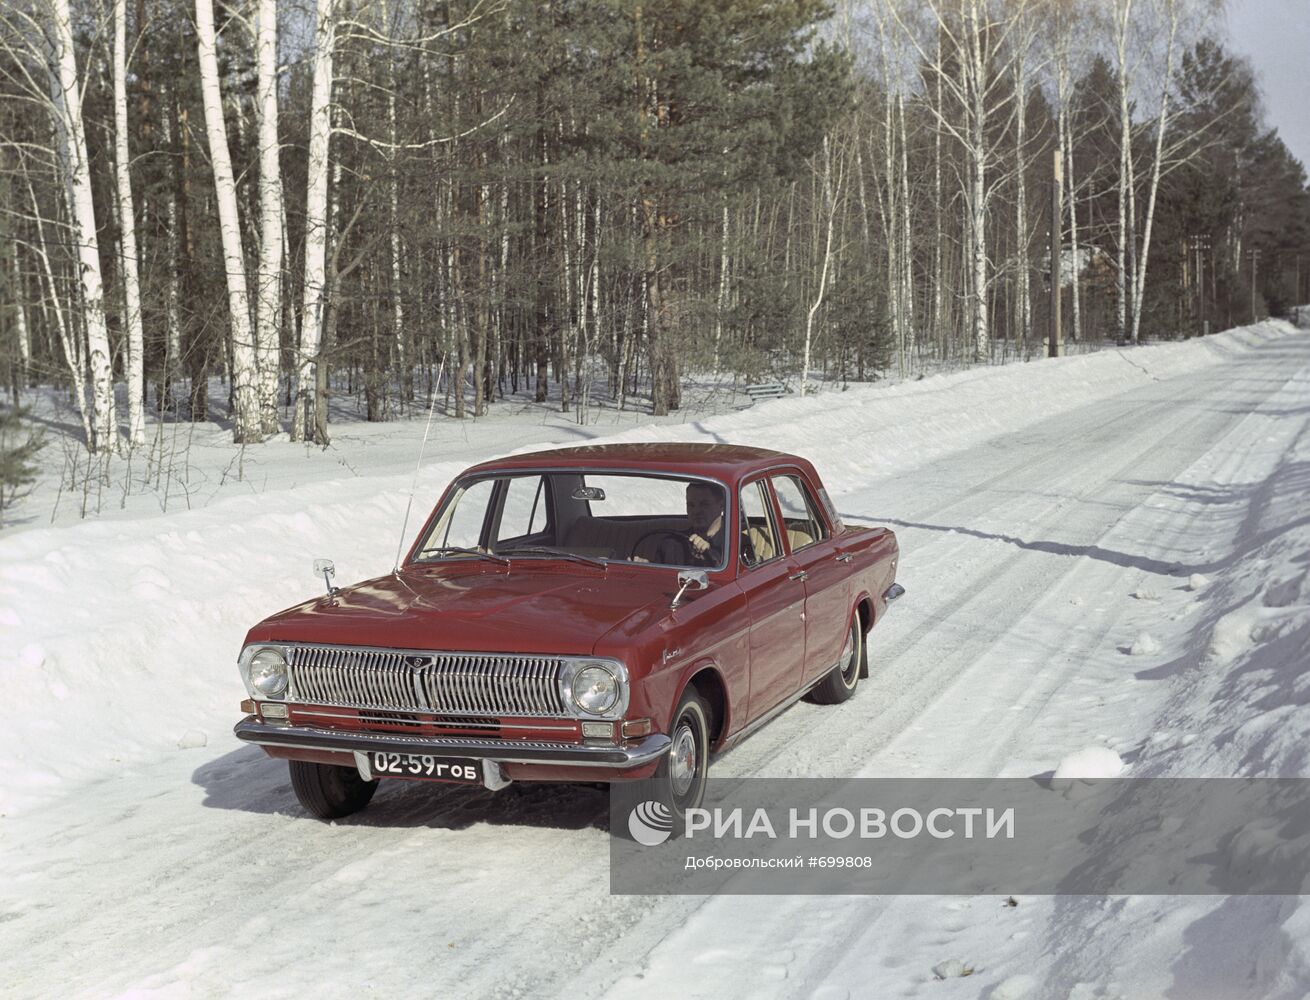 Советский автомобиль ГАЗ-24 "Волга"